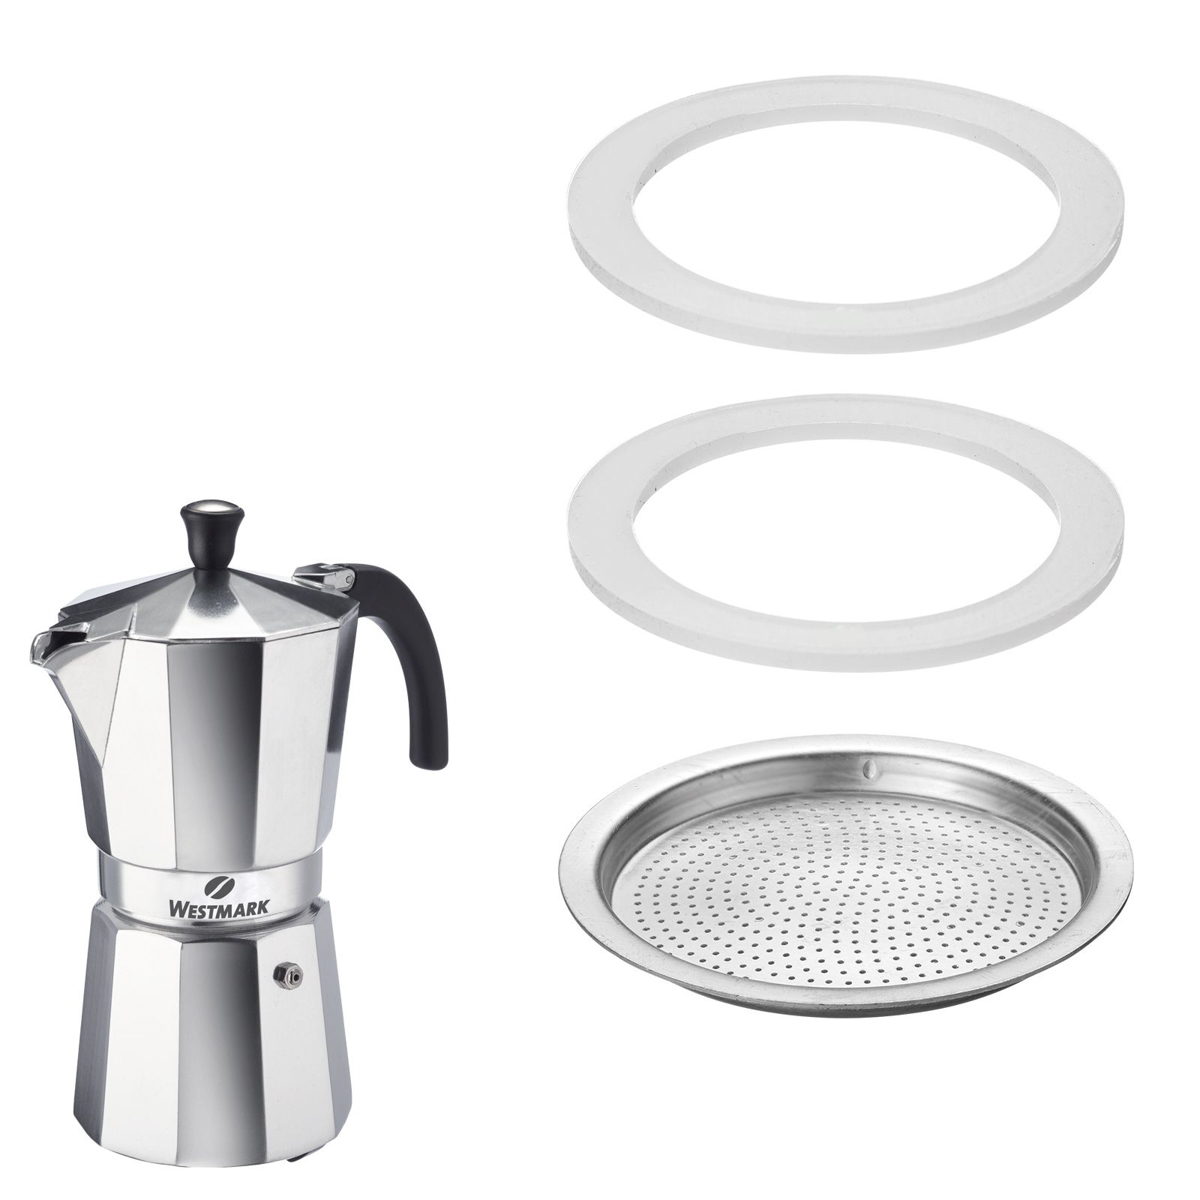 2 Silikondichtringe und 1 Filterplättchen für Espressokocher Art.-Nr. 24642260